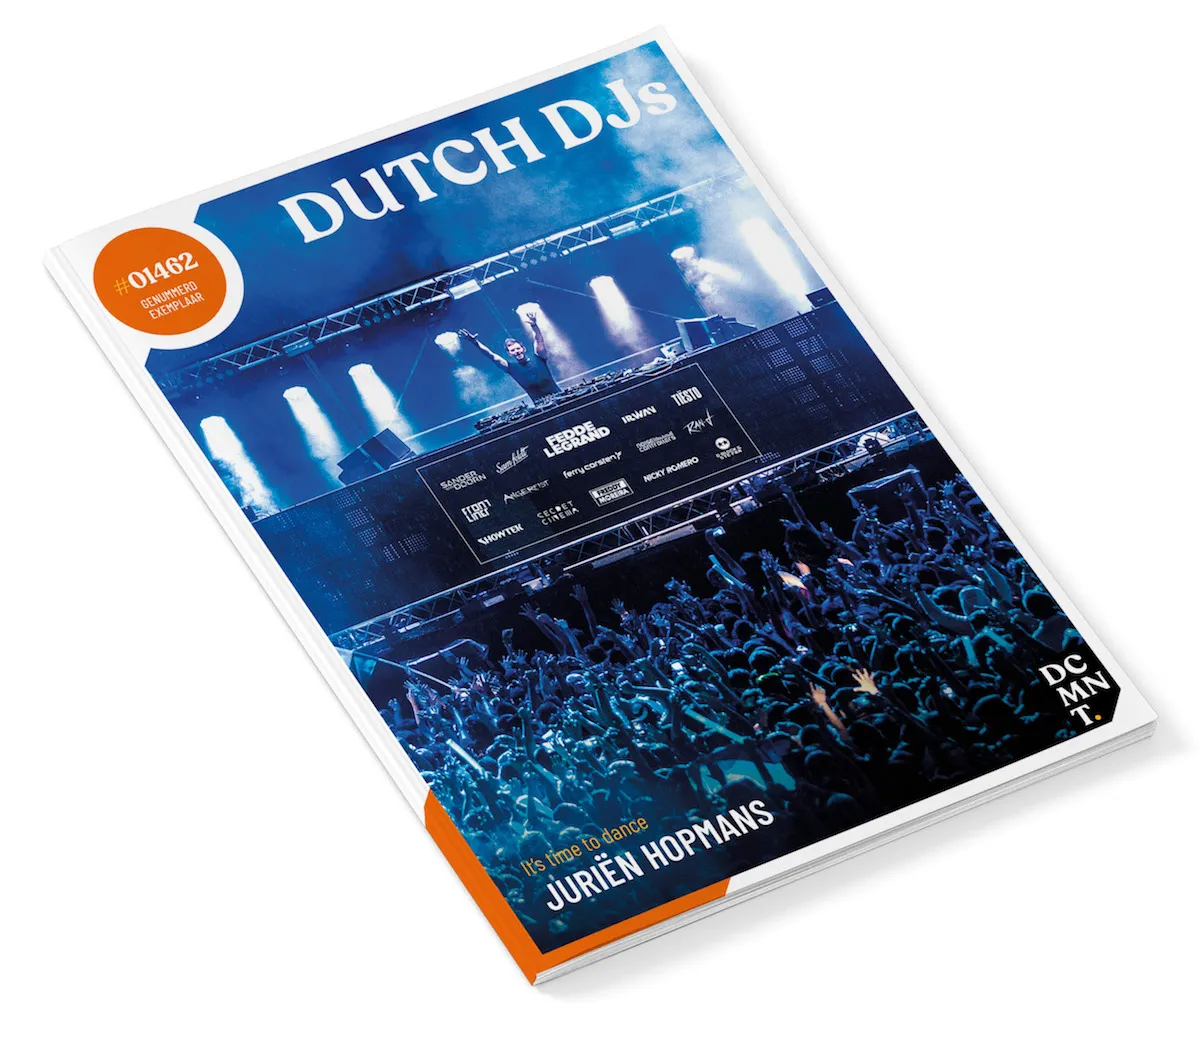 dutch djs magazine cover